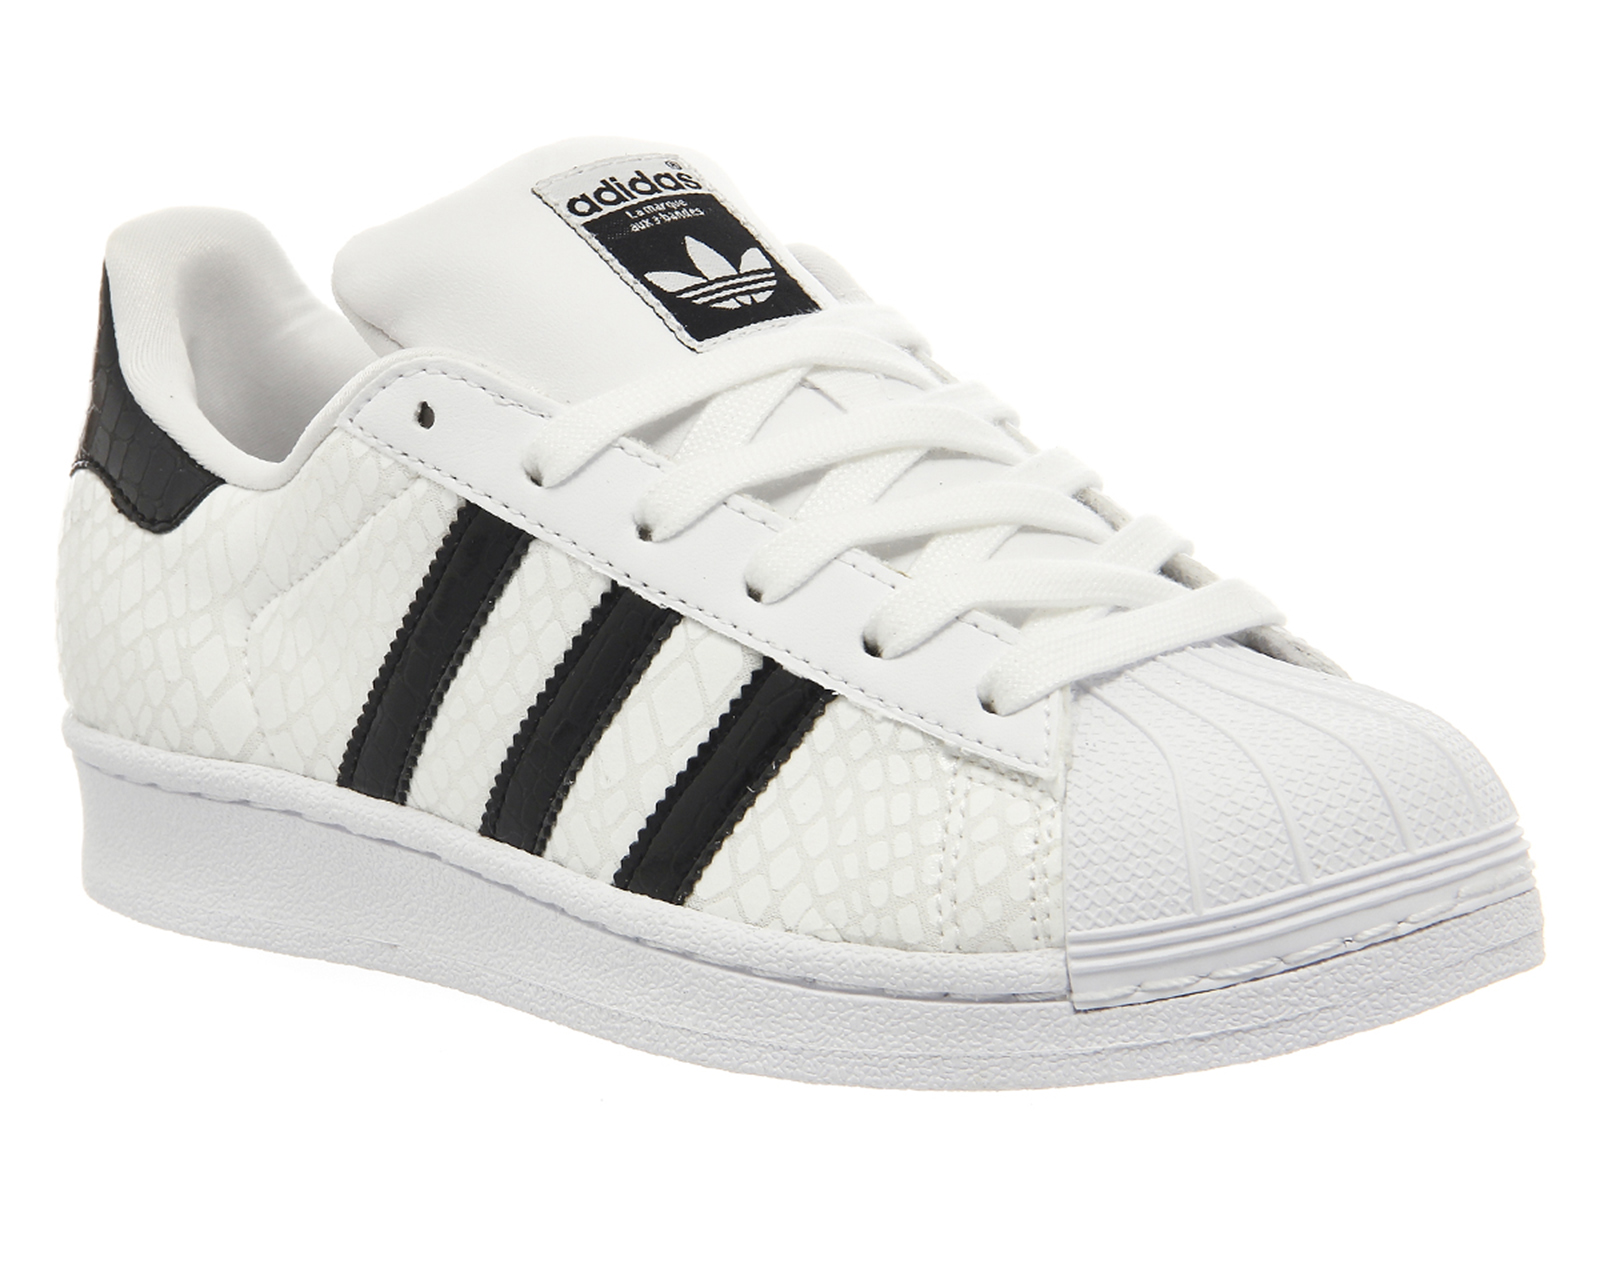 adidas white with black stripes - 52 